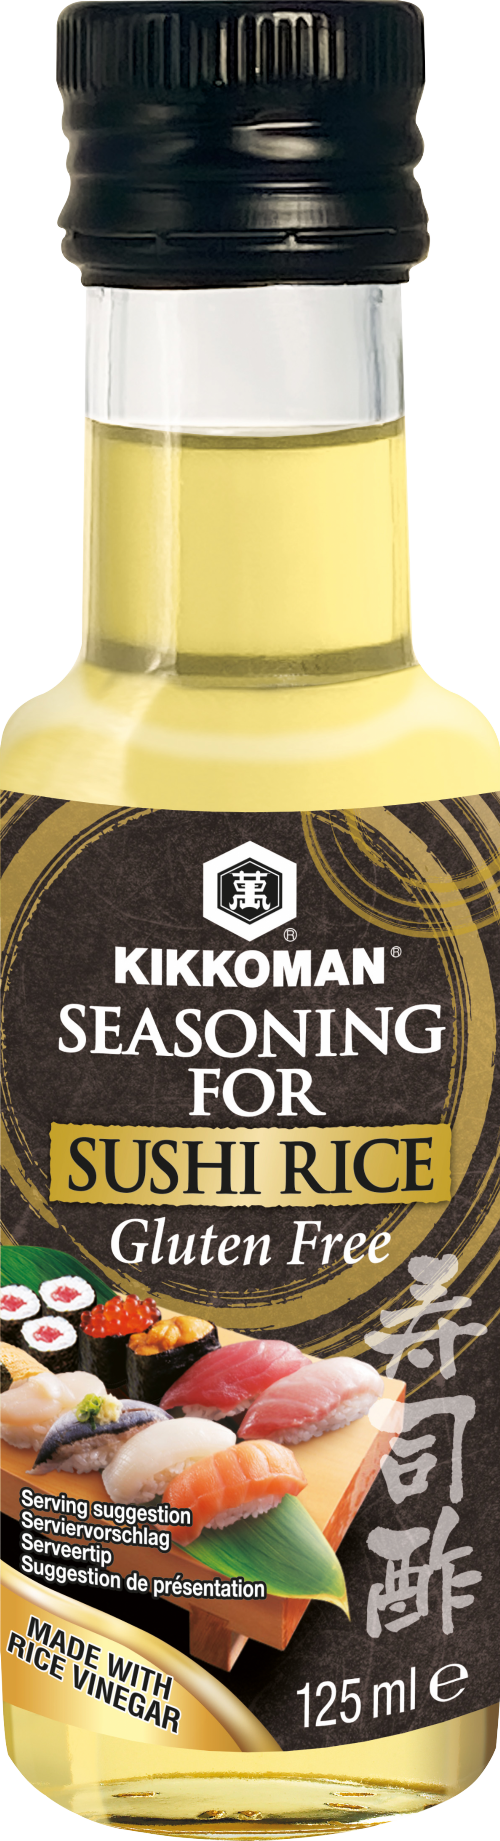 KIKKOMAN Seasoning for Sushi Rice 125ml